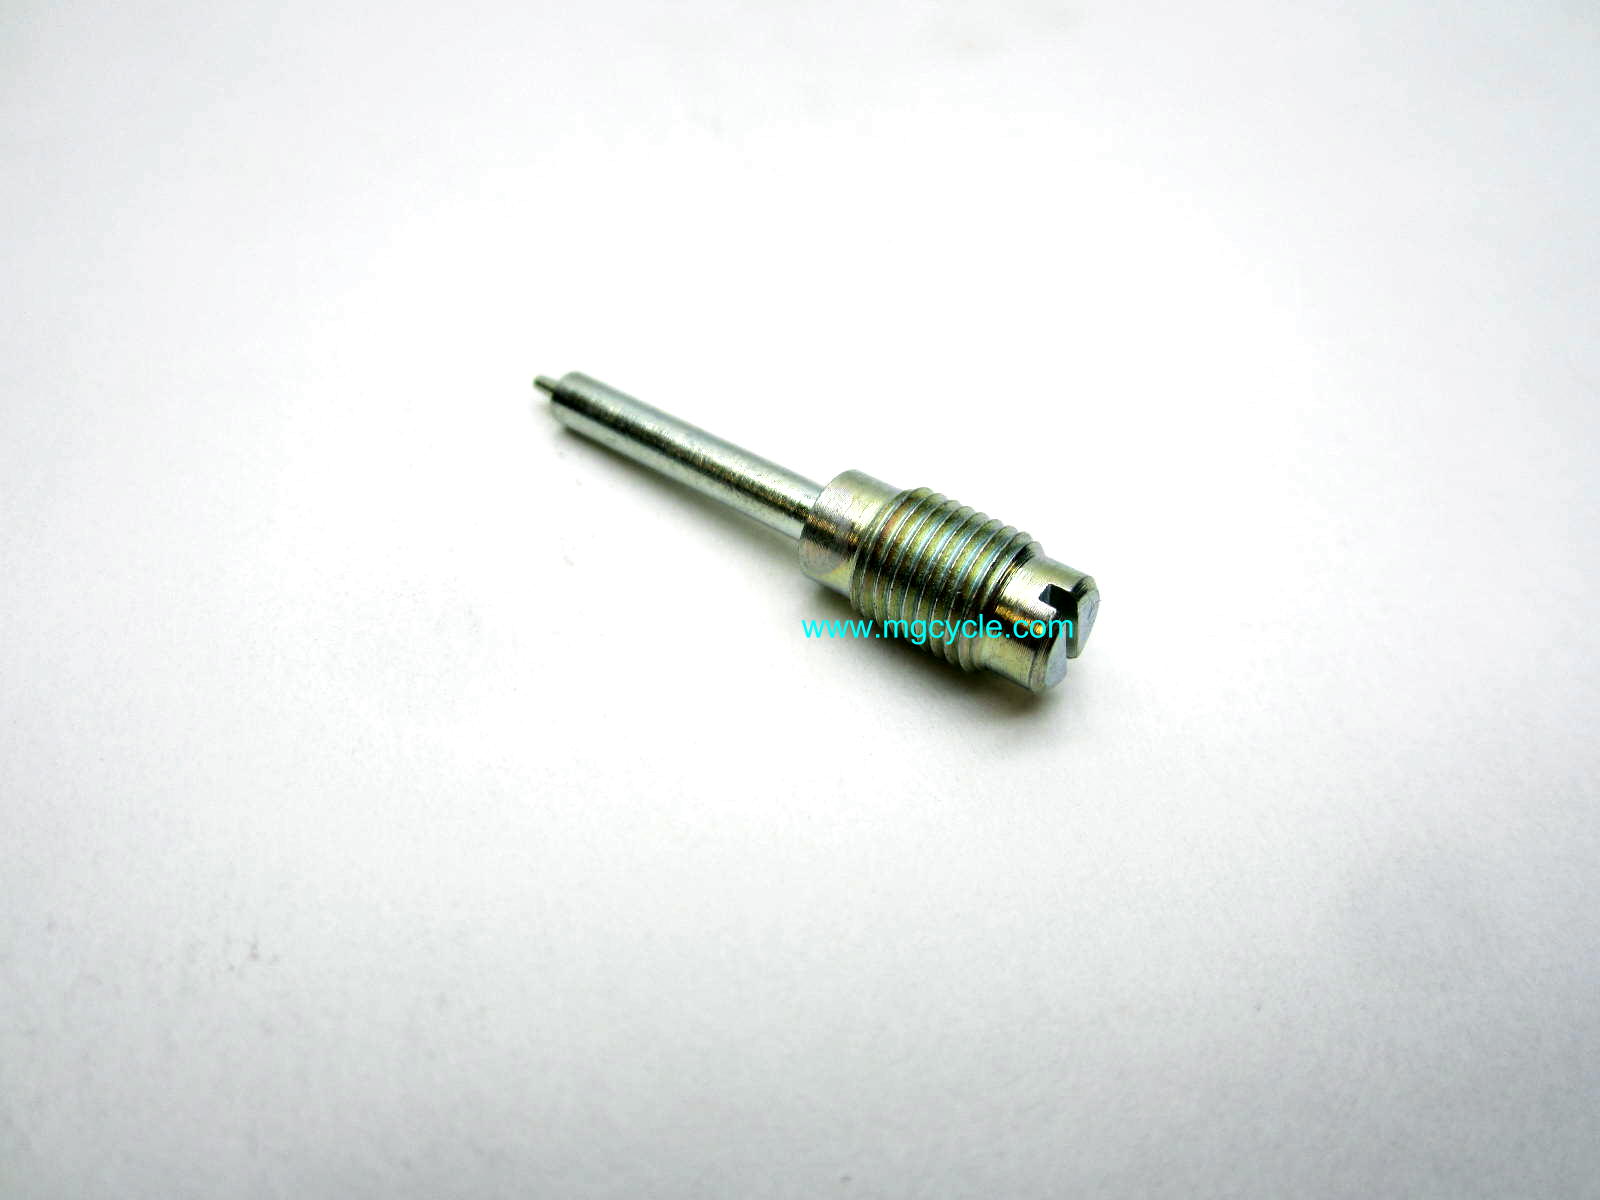 Dellorto 7449 mixture screw VHB29 VHB30 VHBZ PHF carbs (33mm) - Click Image to Close